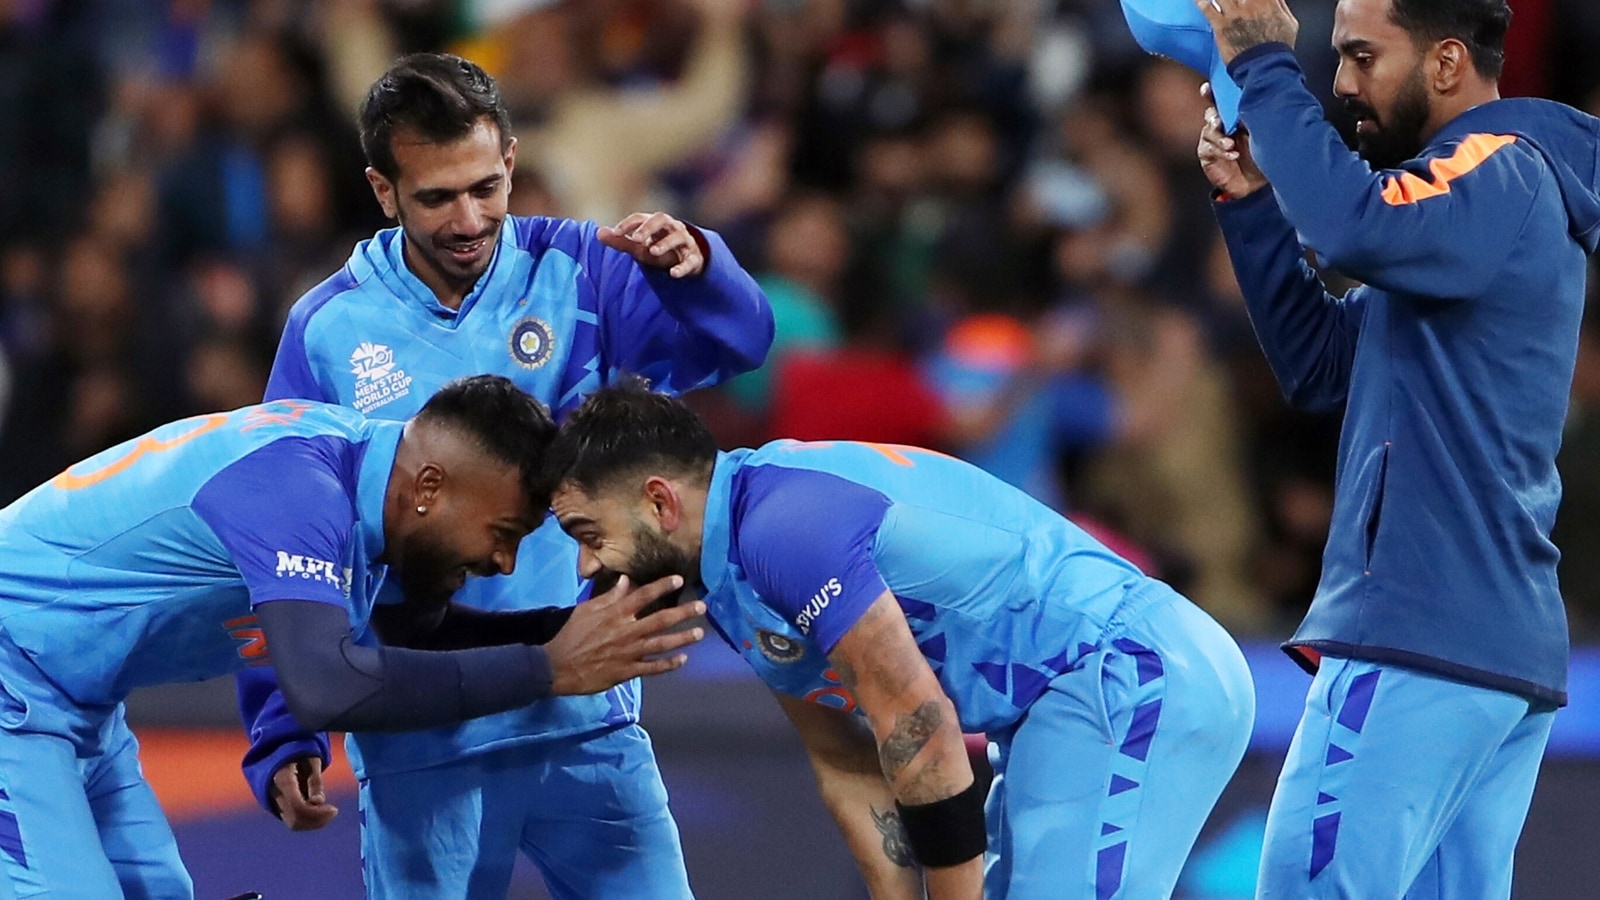 Watch Virat Kohli's tearyeyed, emotional celebration touches hearts